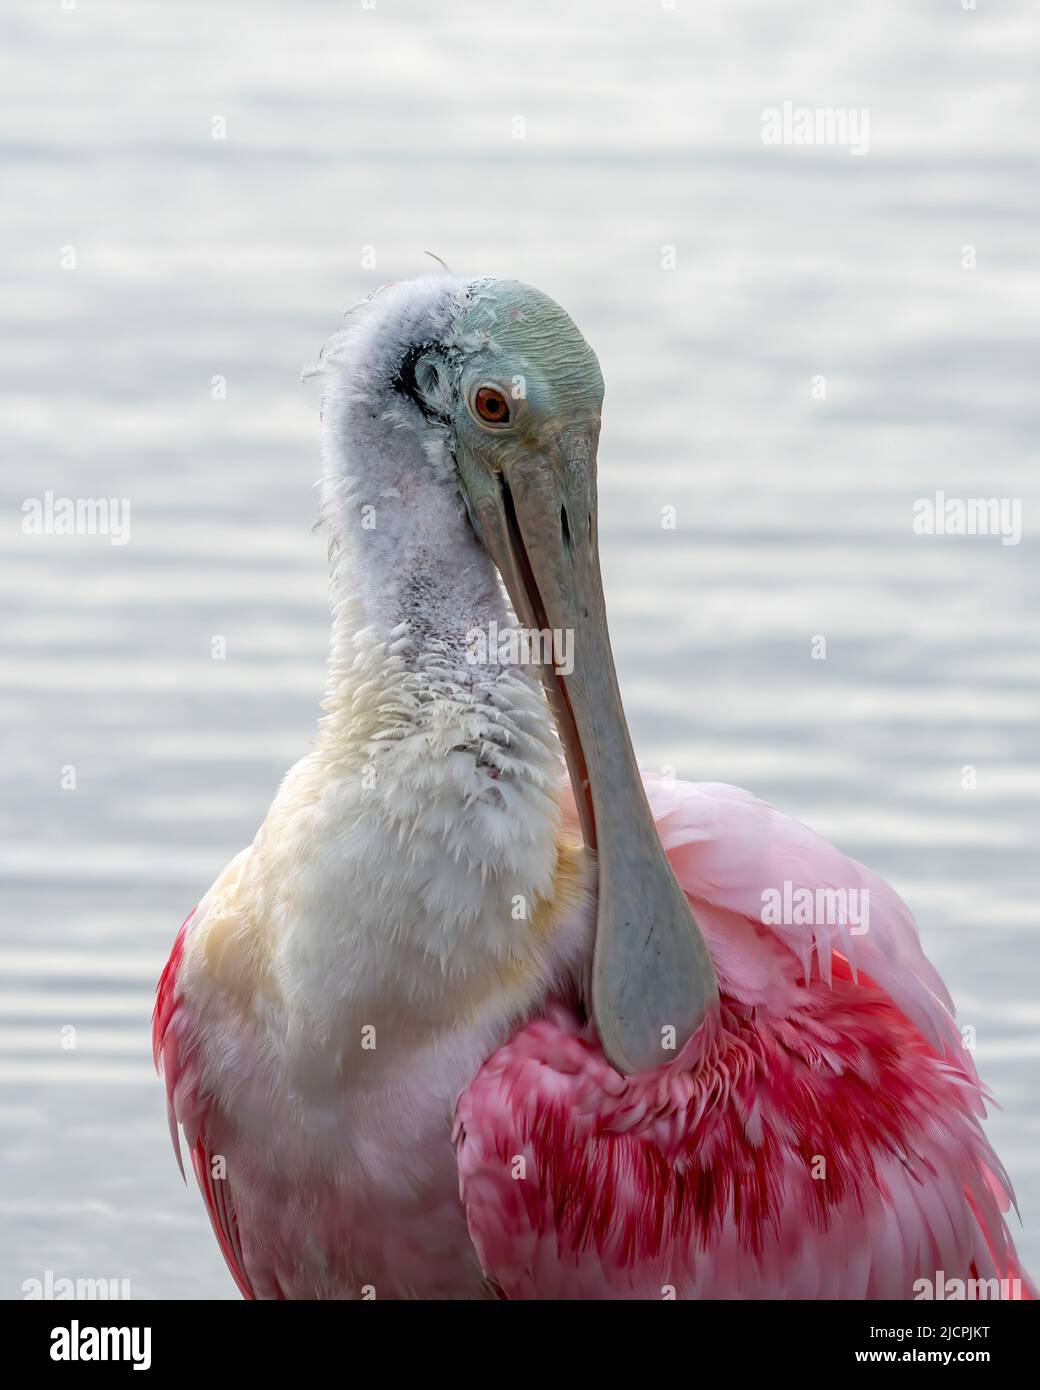 Portrait d'un Roseate Spoonbill, Platalea ajaja, dans un marais humide. South Padre Island Birding Center, Texas. Banque D'Images